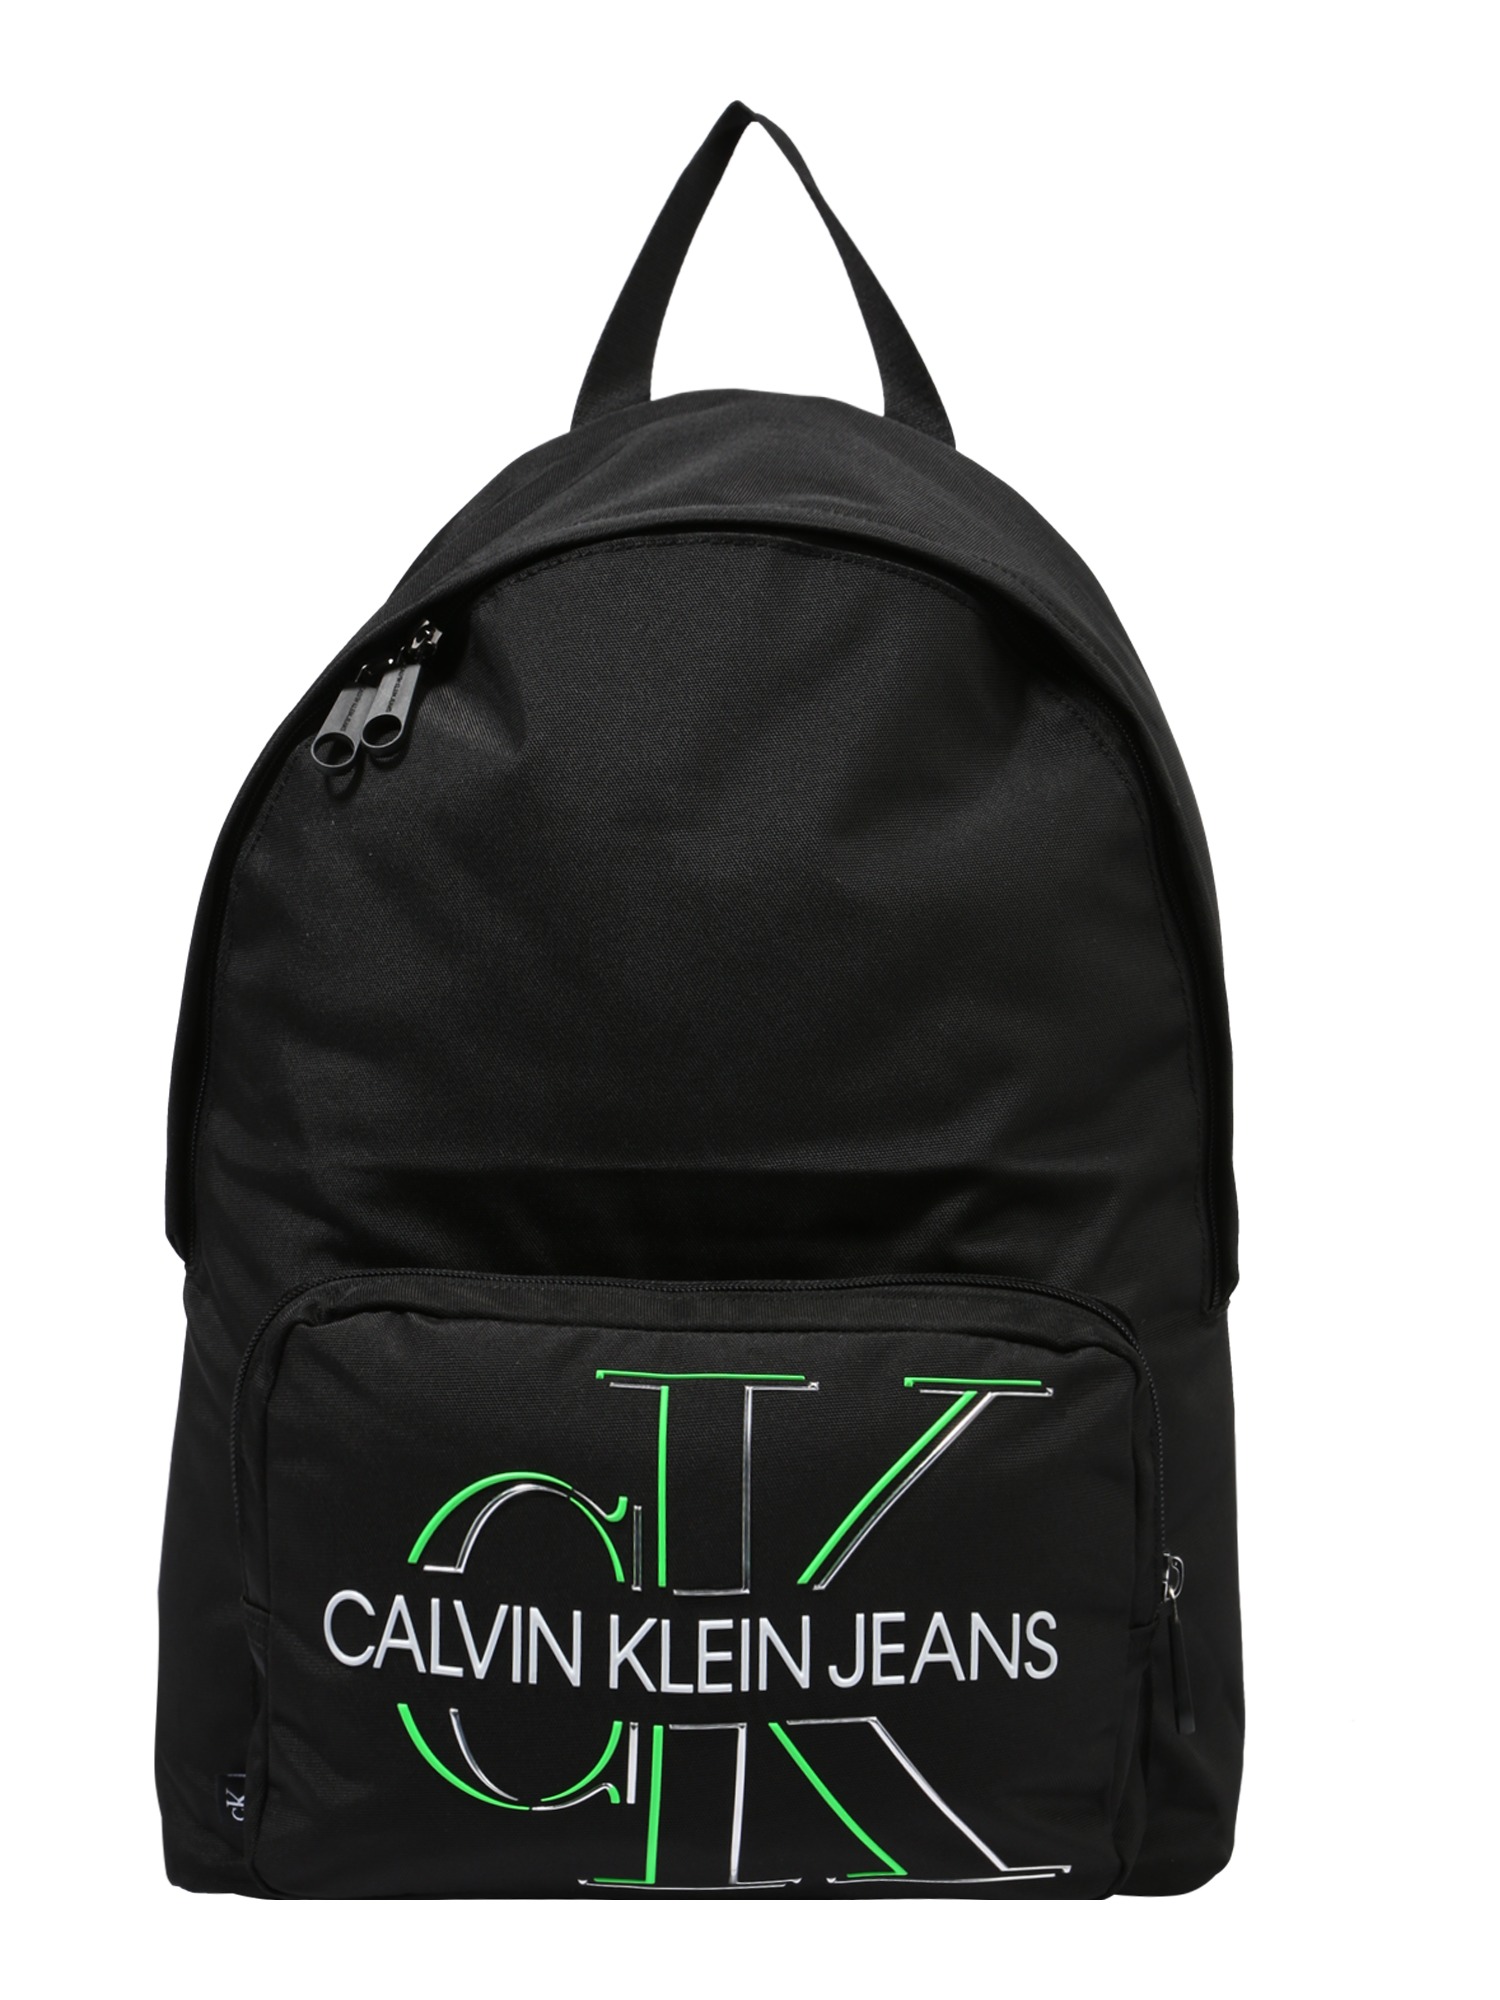 Torby & plecaki Mężczyźni Calvin Klein Jeans Plecak Campus w kolorze Czarnym 